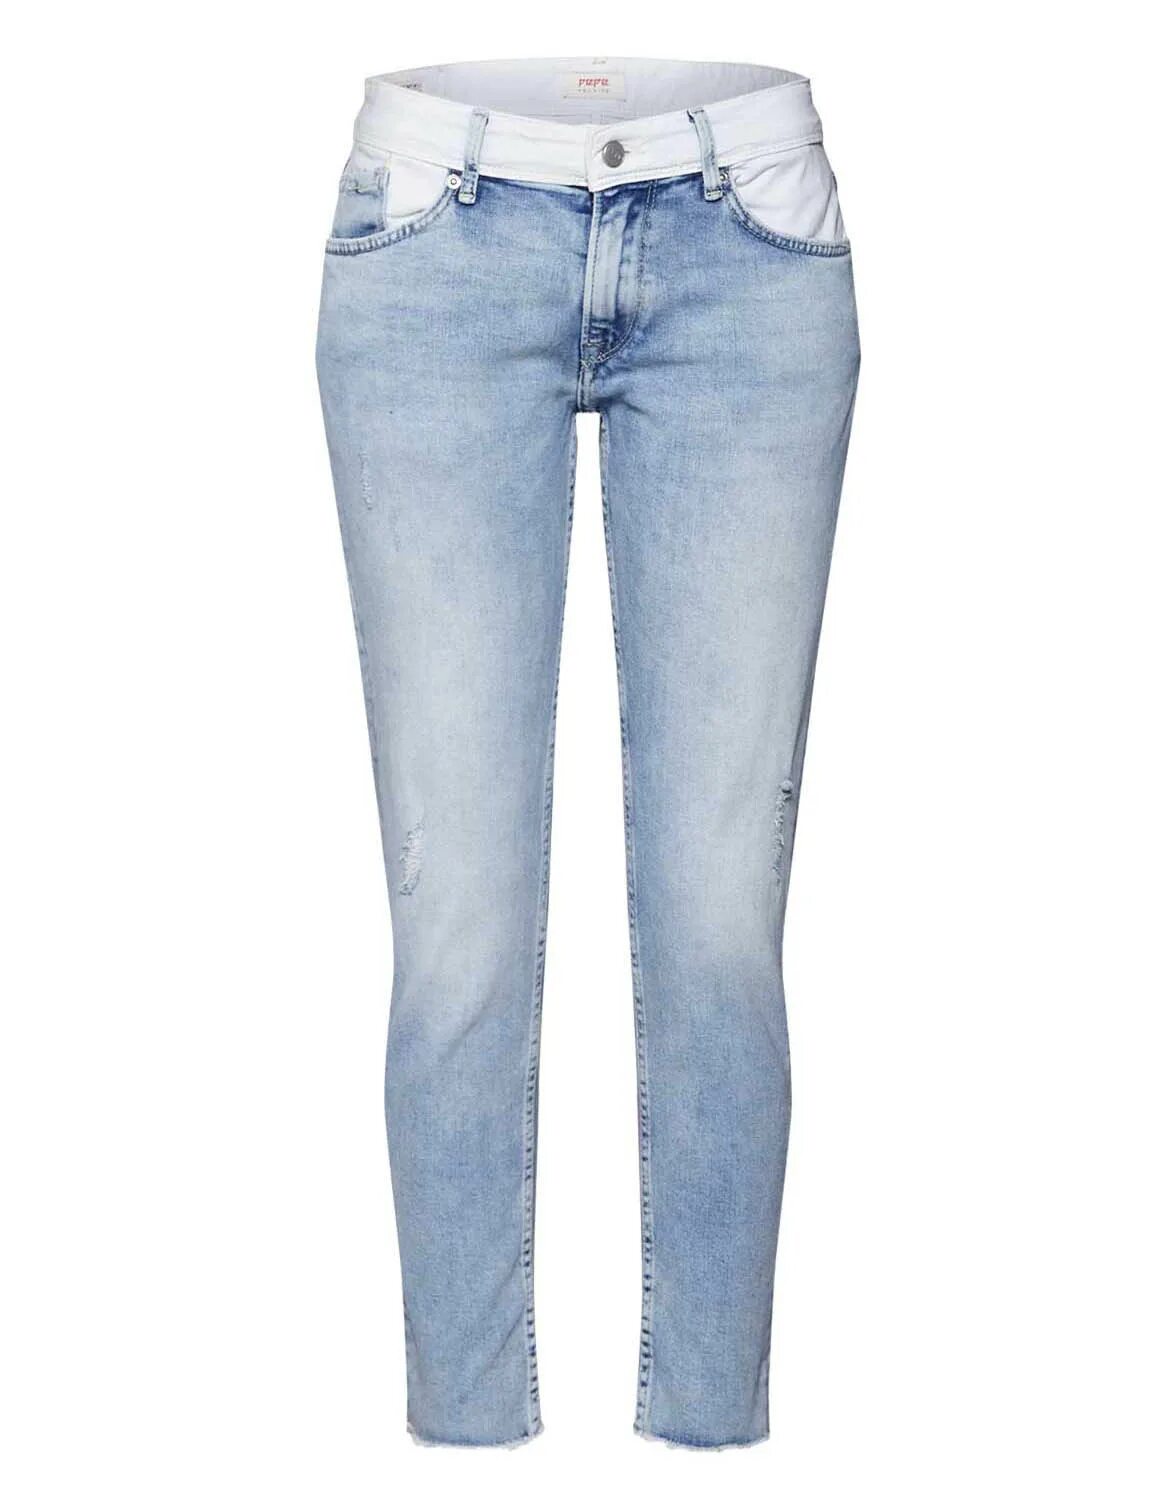 Mixed jeans. Pepe Jeans boyfriend женские. Голубые джинсы женские прямые. Джинсы голубые мамс. Джинсы с контрастным поясом.